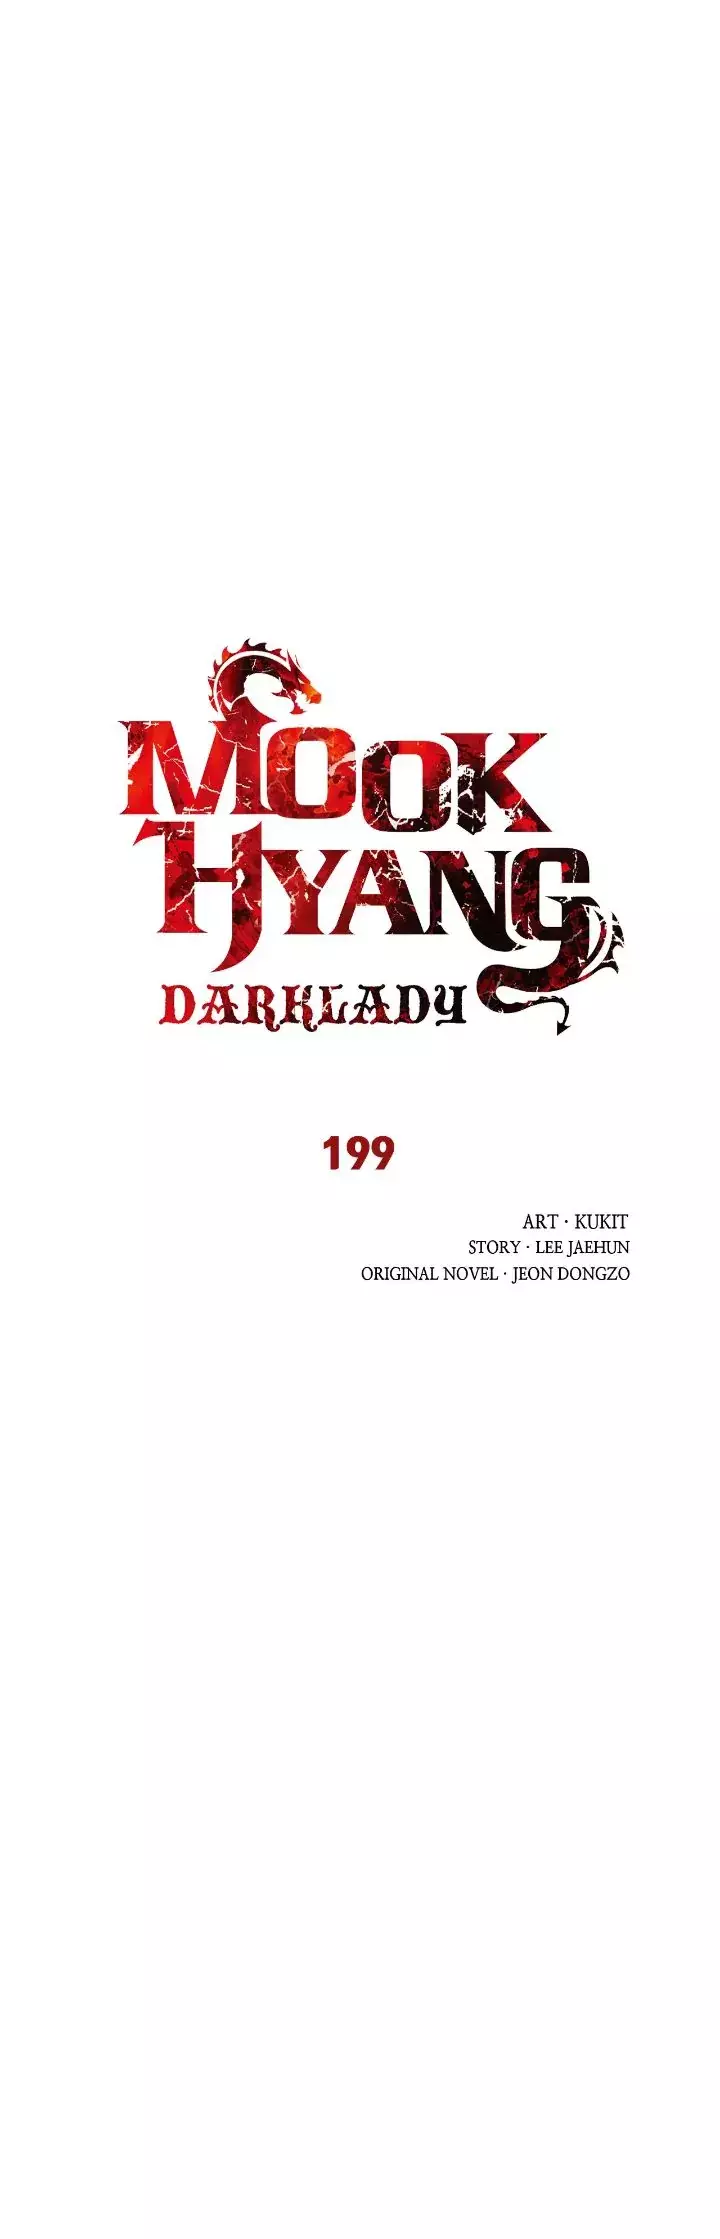 MookHyang - Dark Lady - 199 page 8-a6743e9b